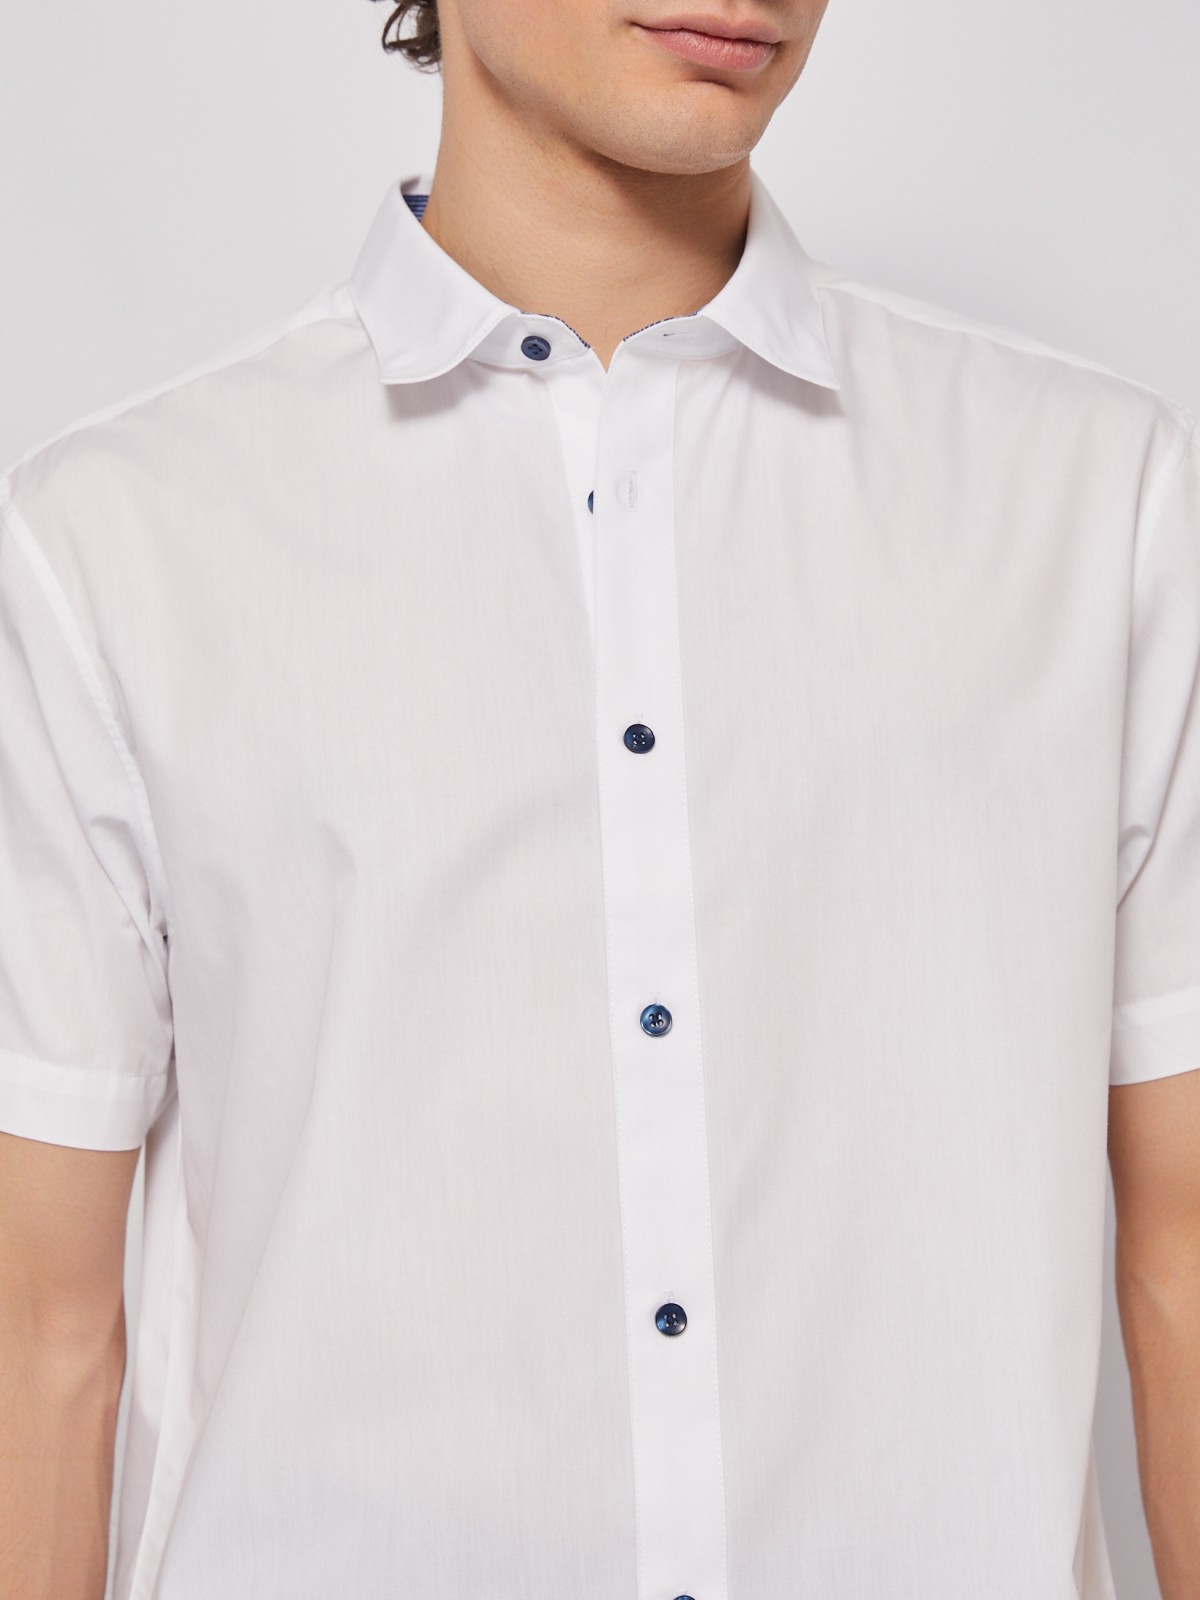 Офисная рубашка с коротким рукавом zolla 014222259012, цвет белый, размер S - фото 5